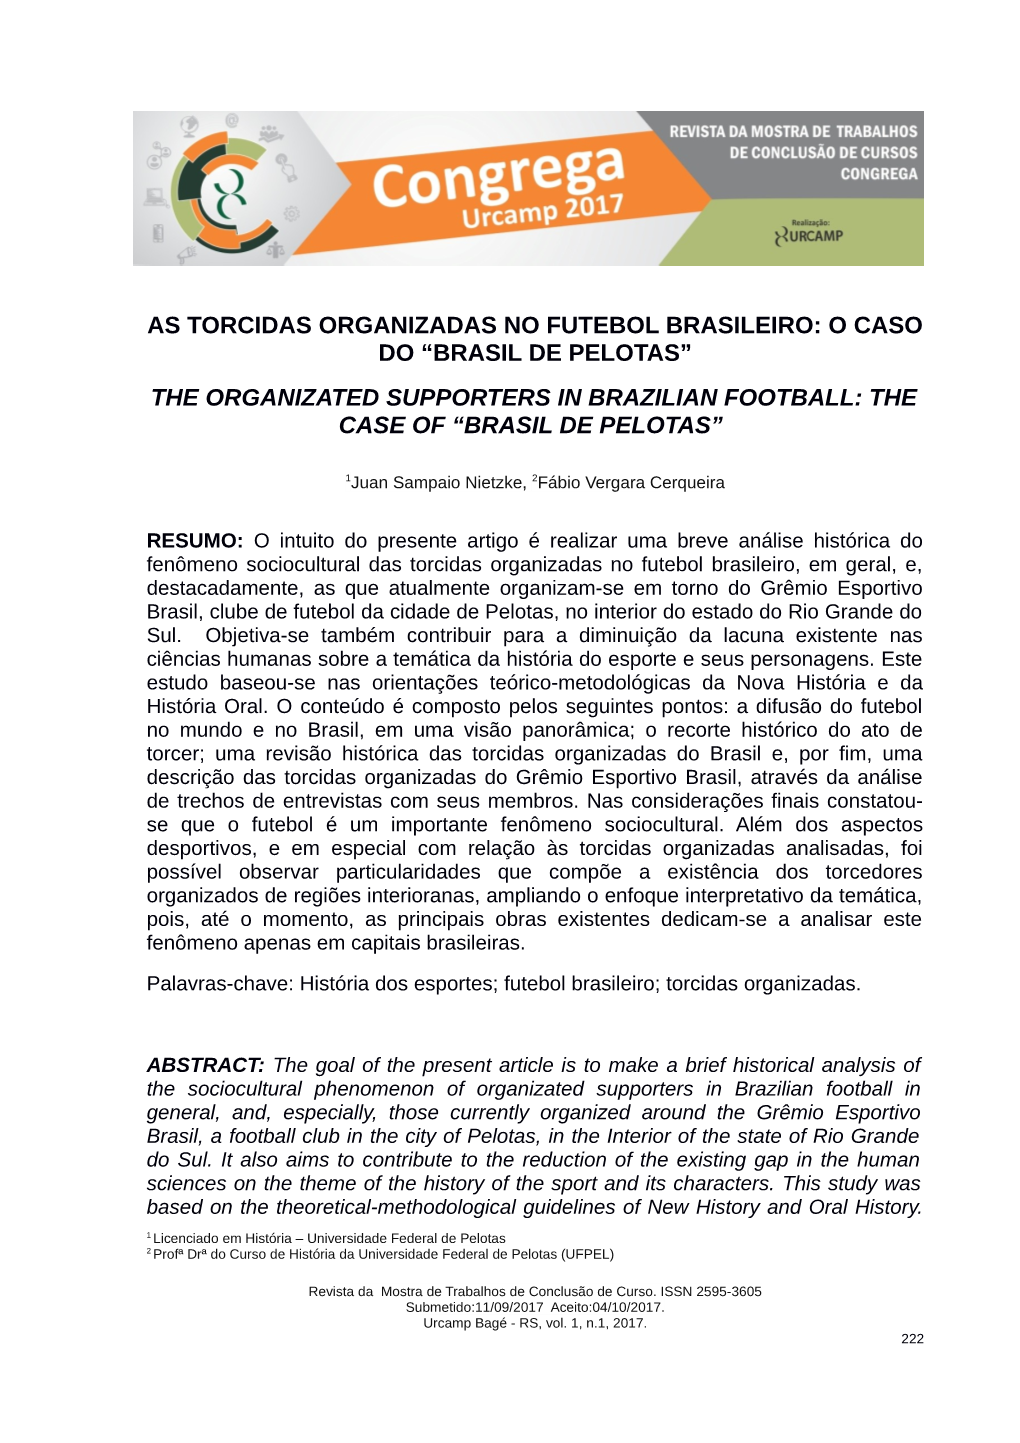 As Torcidas Organizadas No Futebol Brasileiro: O Caso Do “Brasil De Pelotas” the Organizated Supporters in Brazilian Football: the Case of “Brasil De Pelotas”